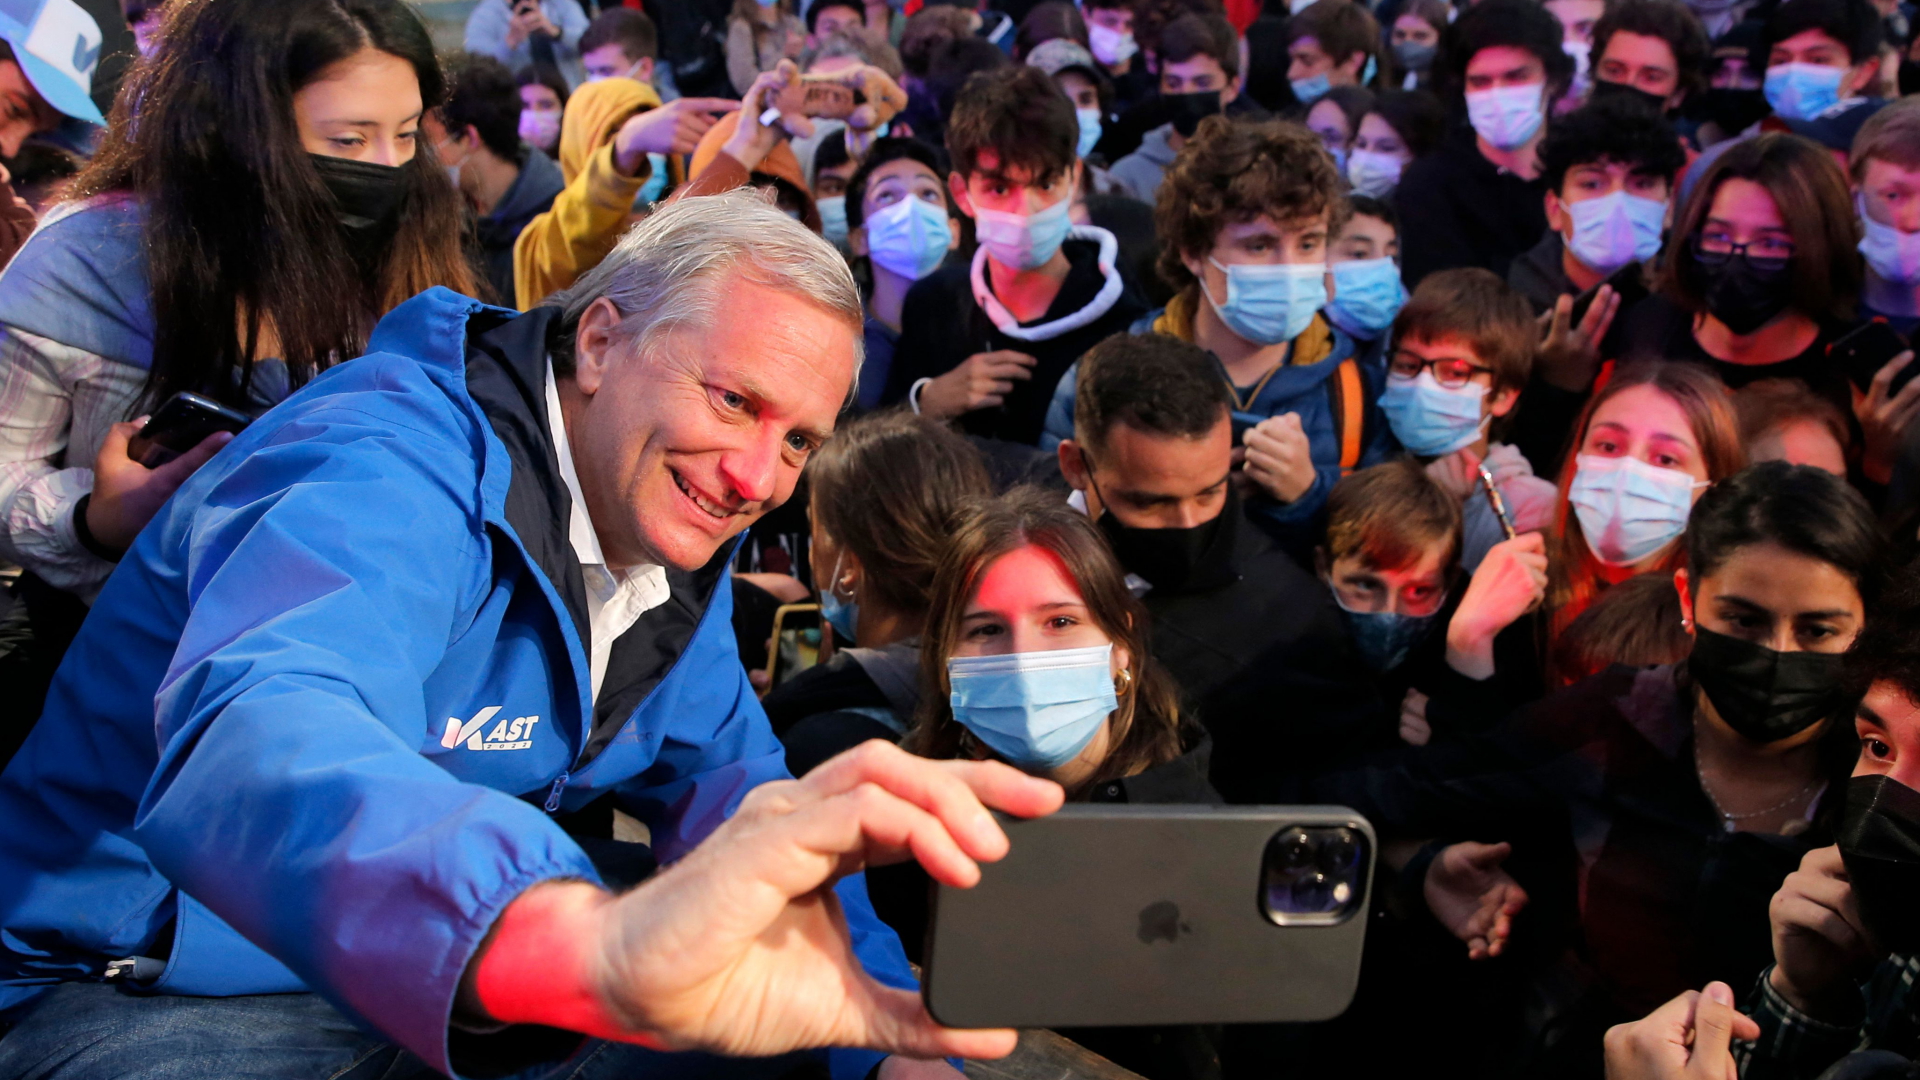 Chiles Präsidentschaftskandidat Kast bei einem Selfie mit Anhängern | AFP